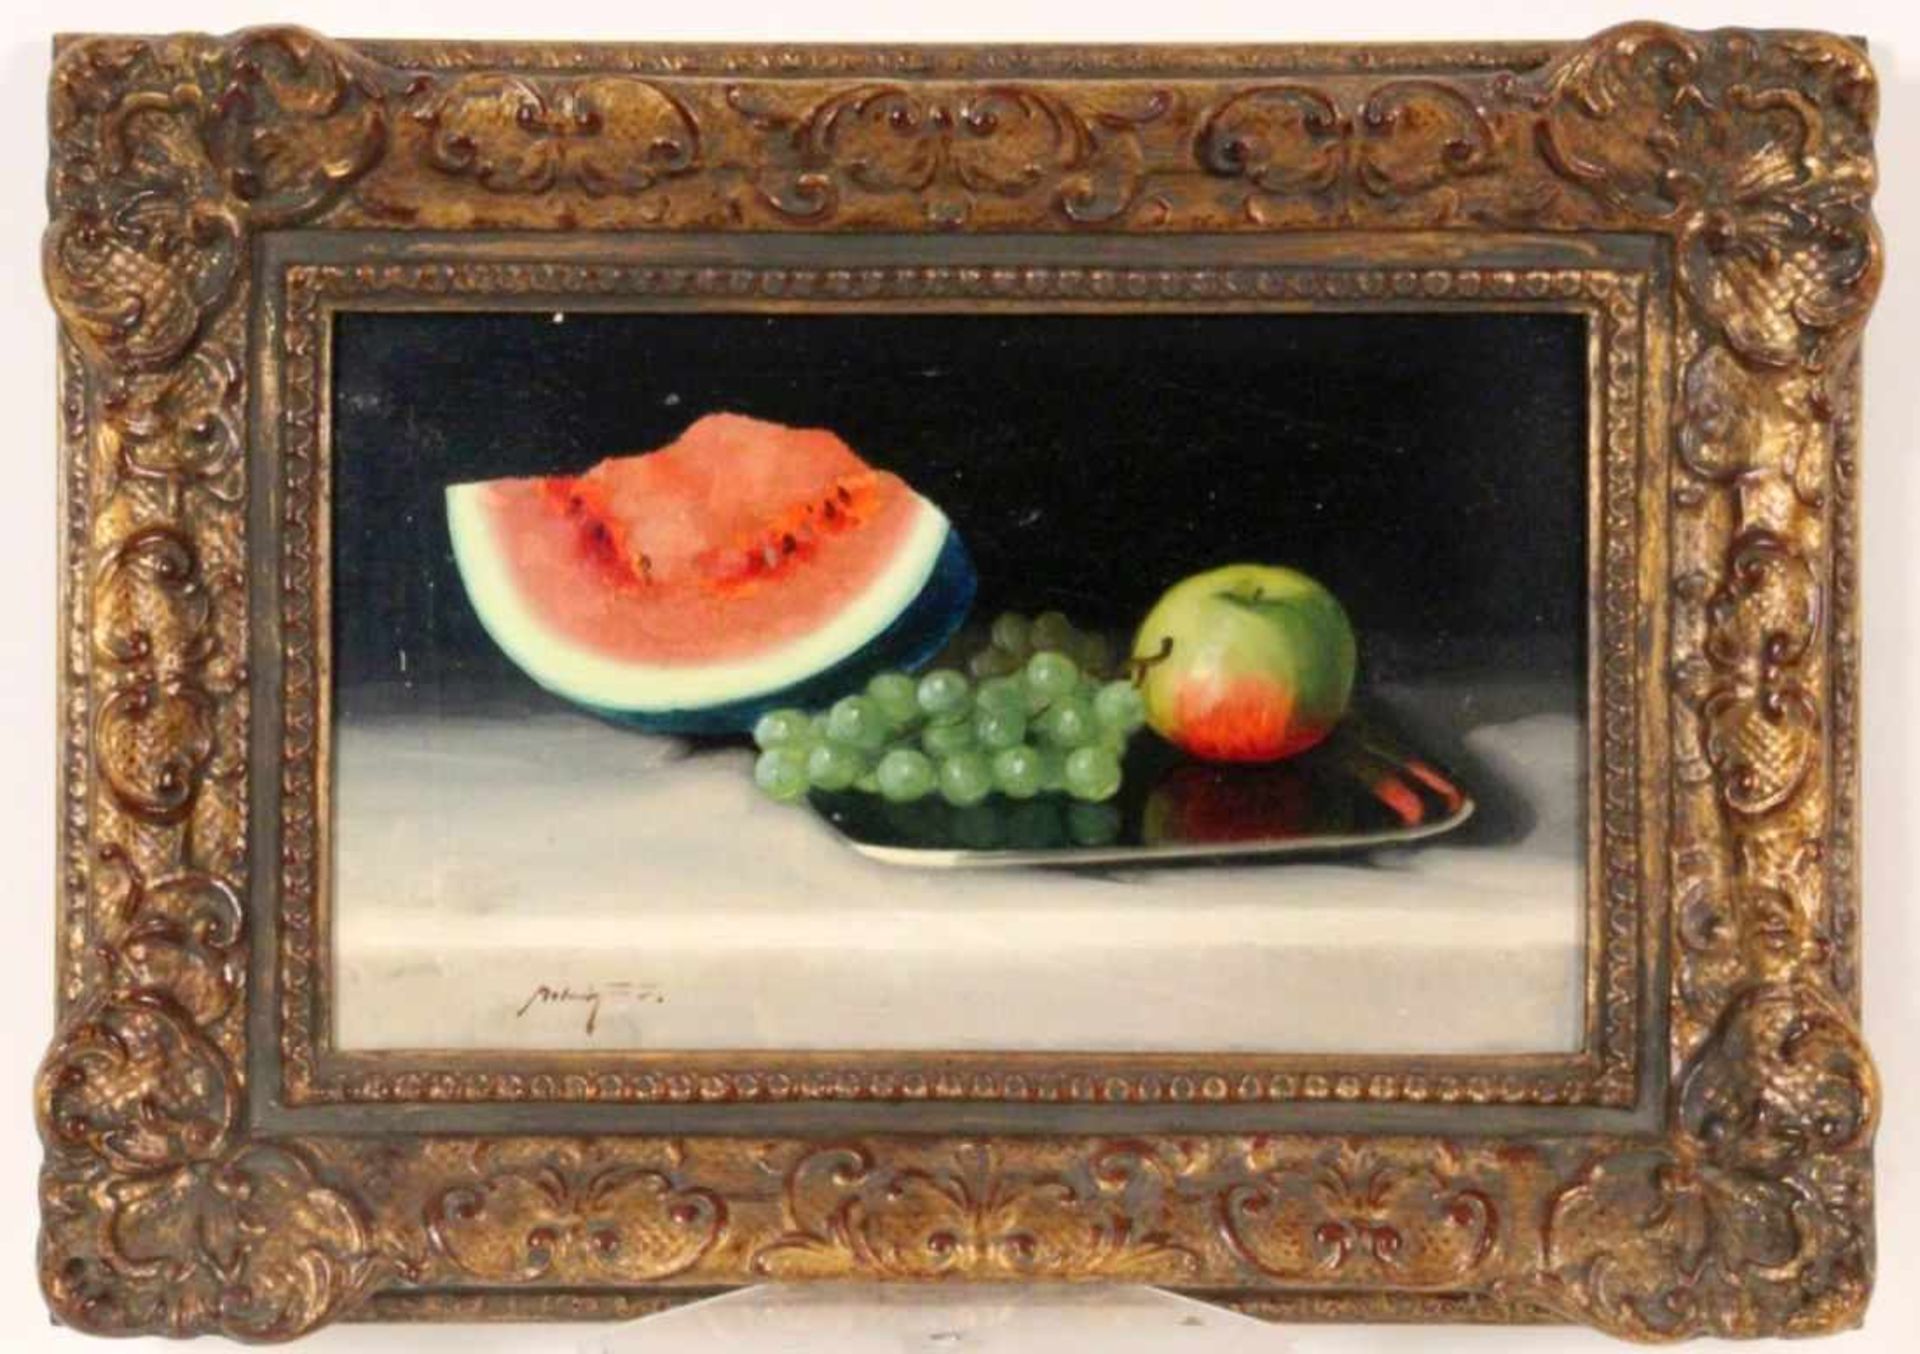 MOLNÁR, JANOS ZOLTANCservenka 1880 - 1960 Gödölloe (Ungarn) Früchtestillleben mit Melone, Trauben